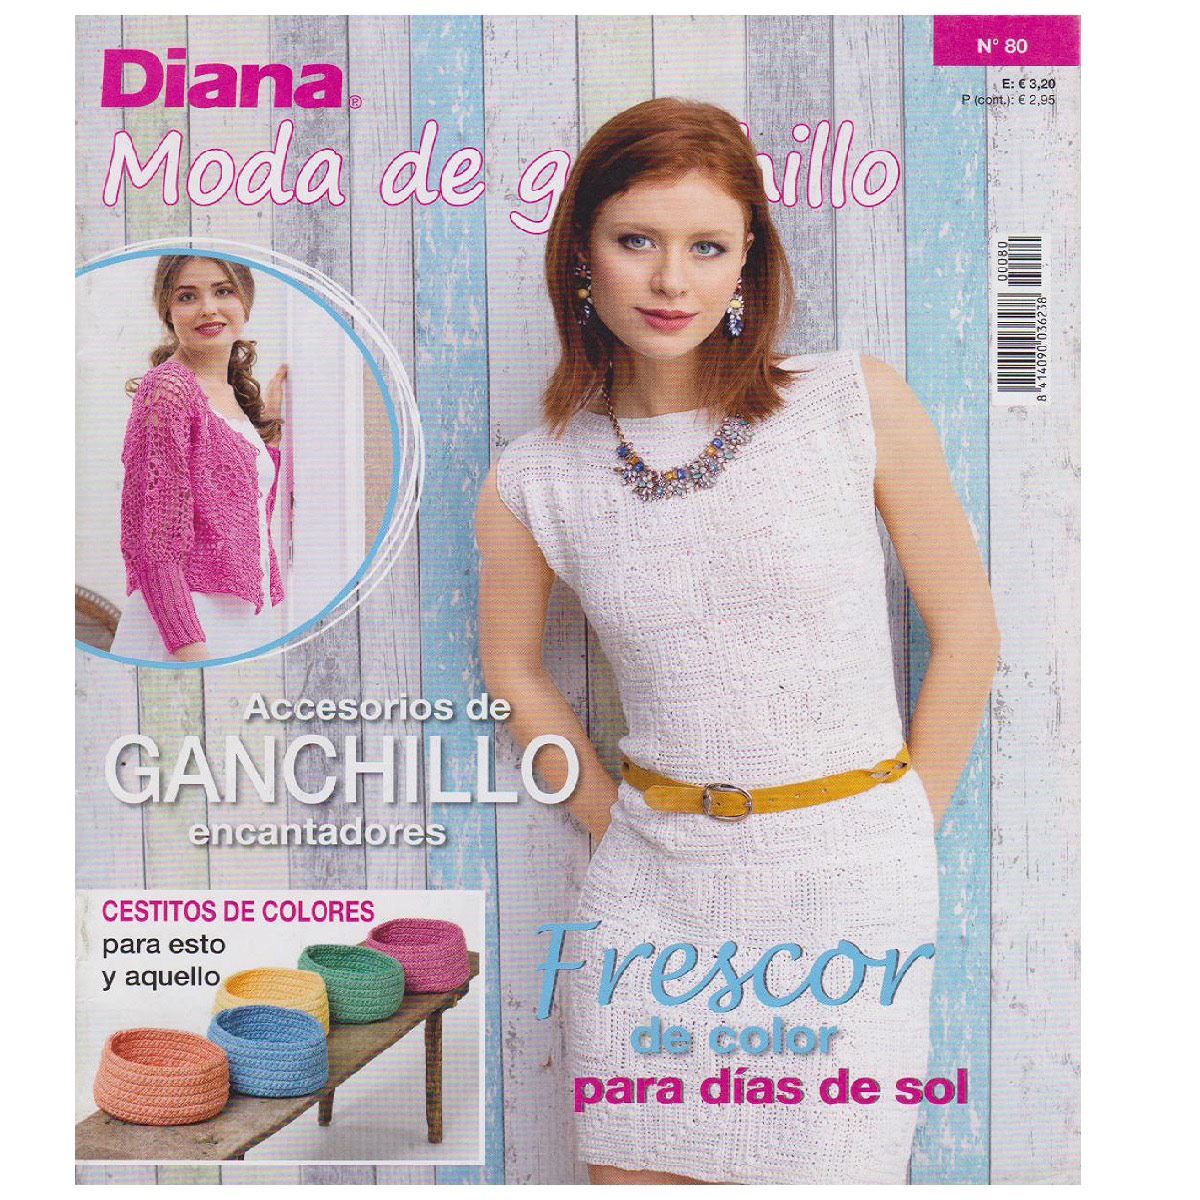 Diana Moda de Ganchillo